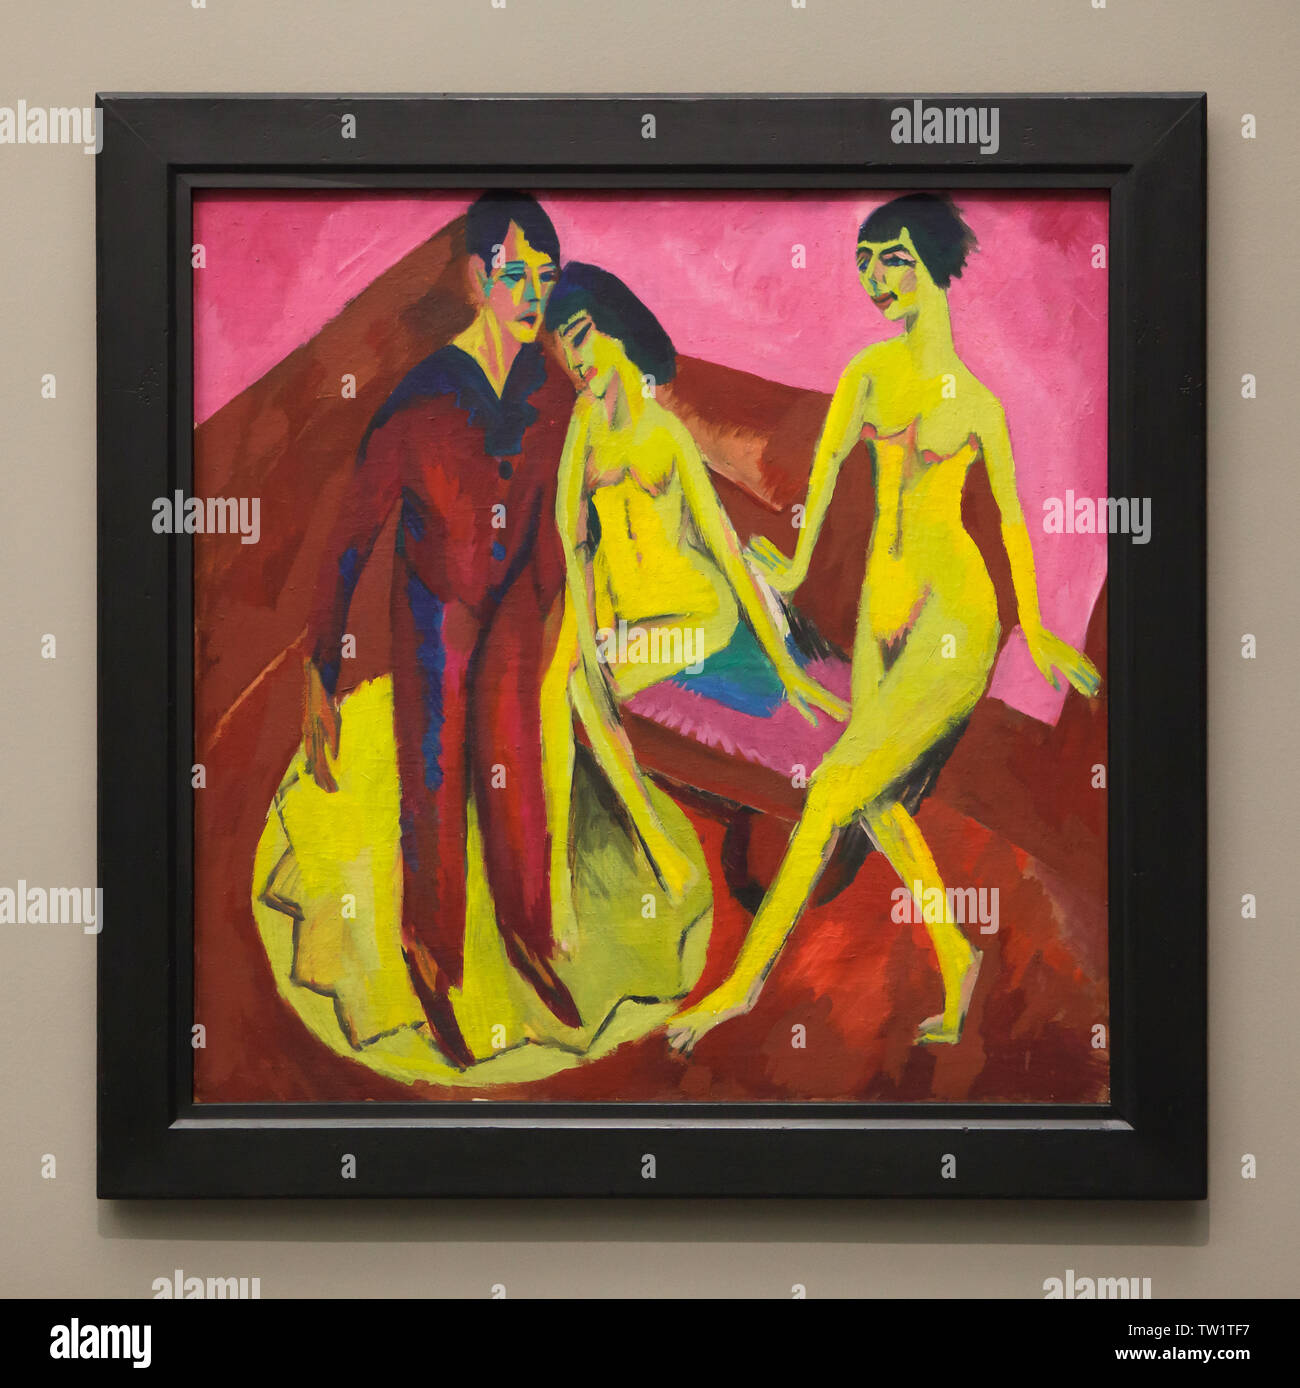 La peinture de l'école 'Dancing' ('Ballet School') par peintre expressionniste allemand Ernst Ludwig Kirchner (1914-1925) sur l'affichage dans la Pinakothek der Moderne à Munich, Bavière, Allemagne. Banque D'Images